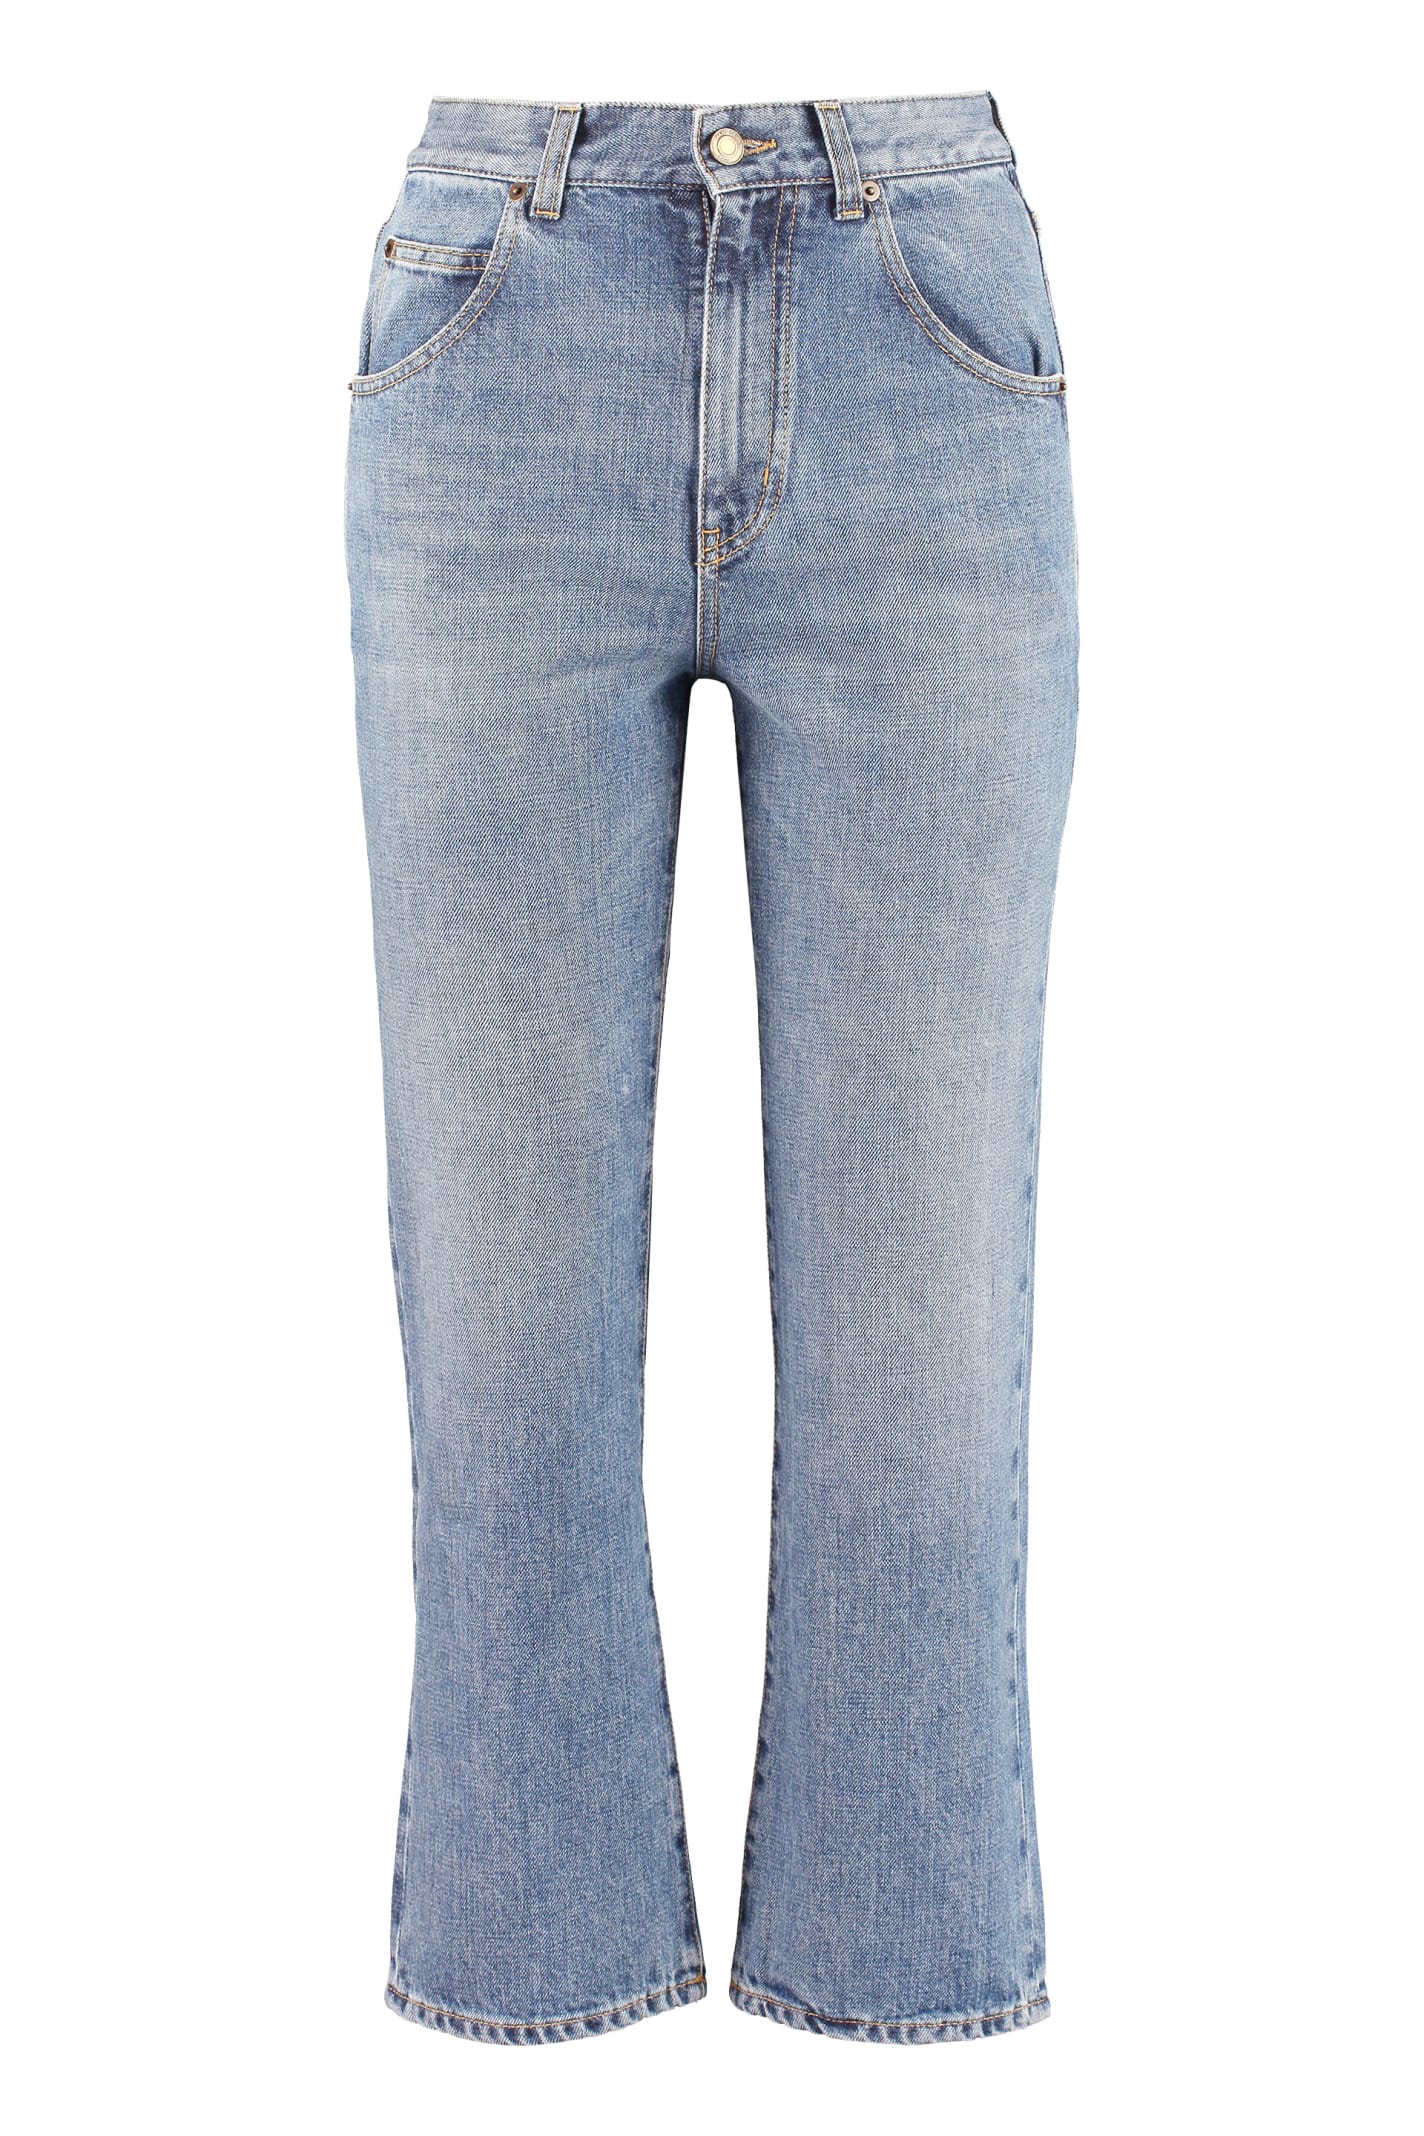 Saint Laurent 5-pocket Jeans